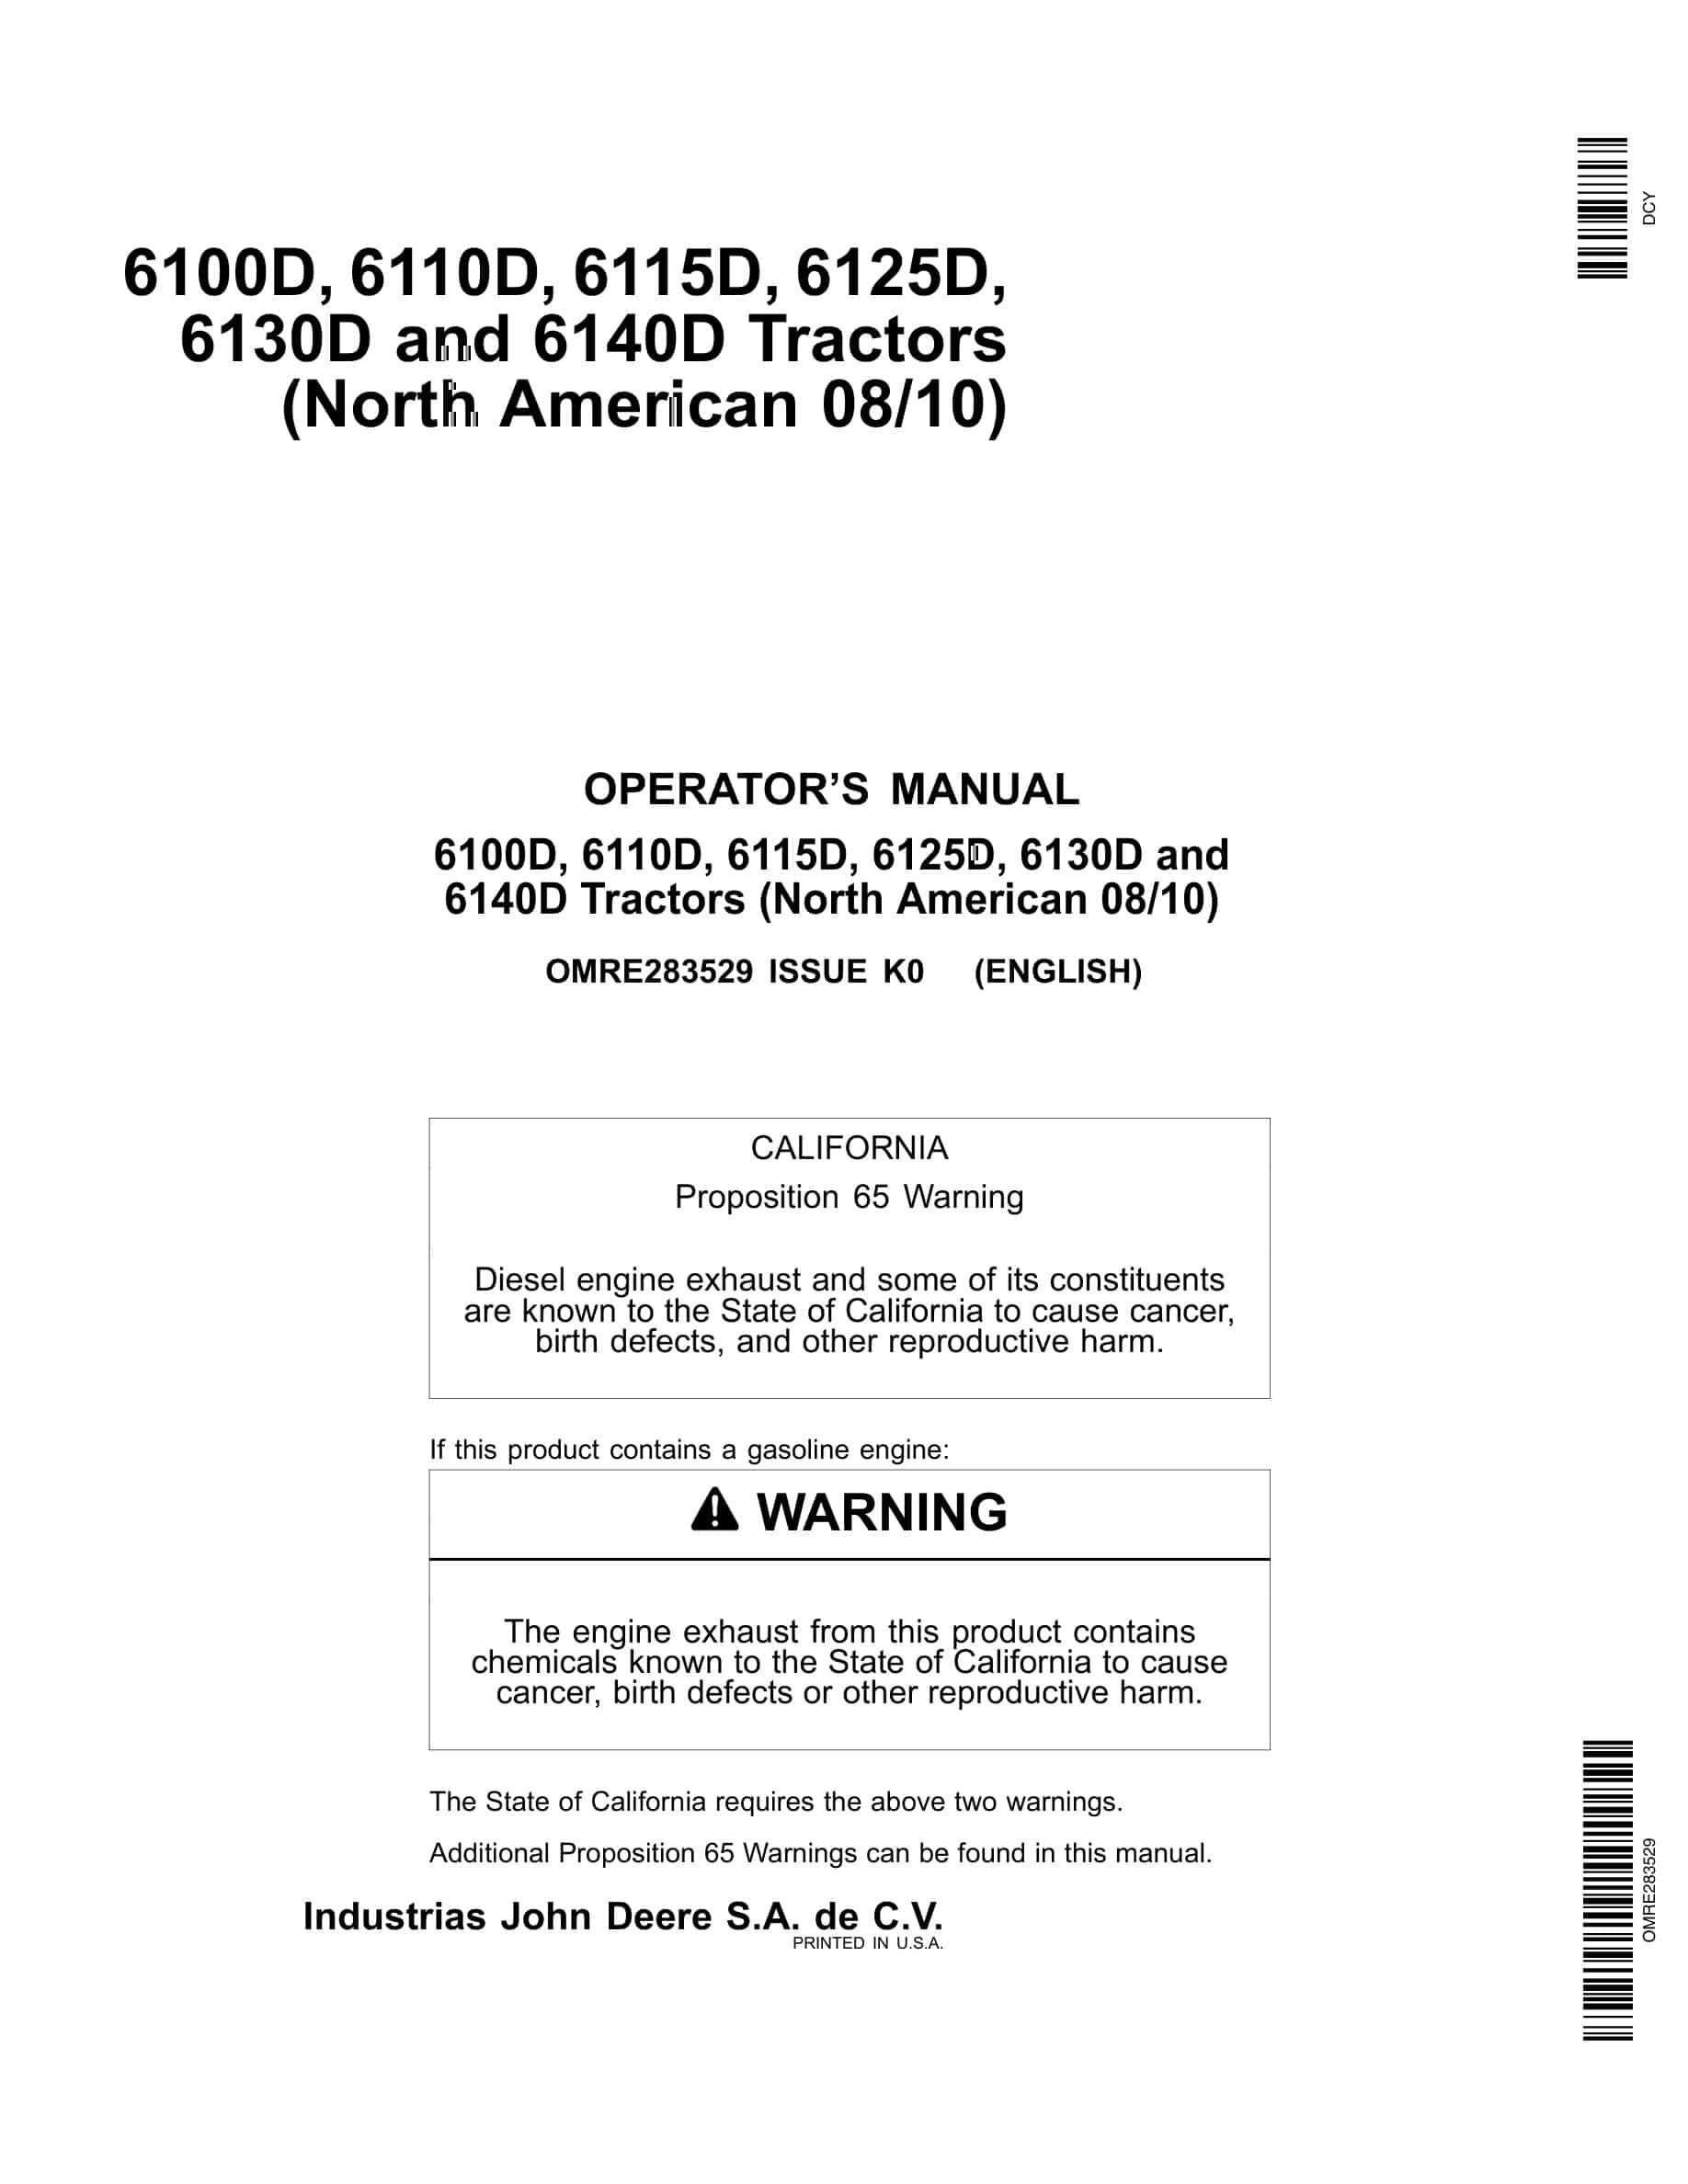 John Deere 6100D, 6110D, 6115D, 6125D, 6130D and 6140D Tractor Operator Manual OMRE283529-1